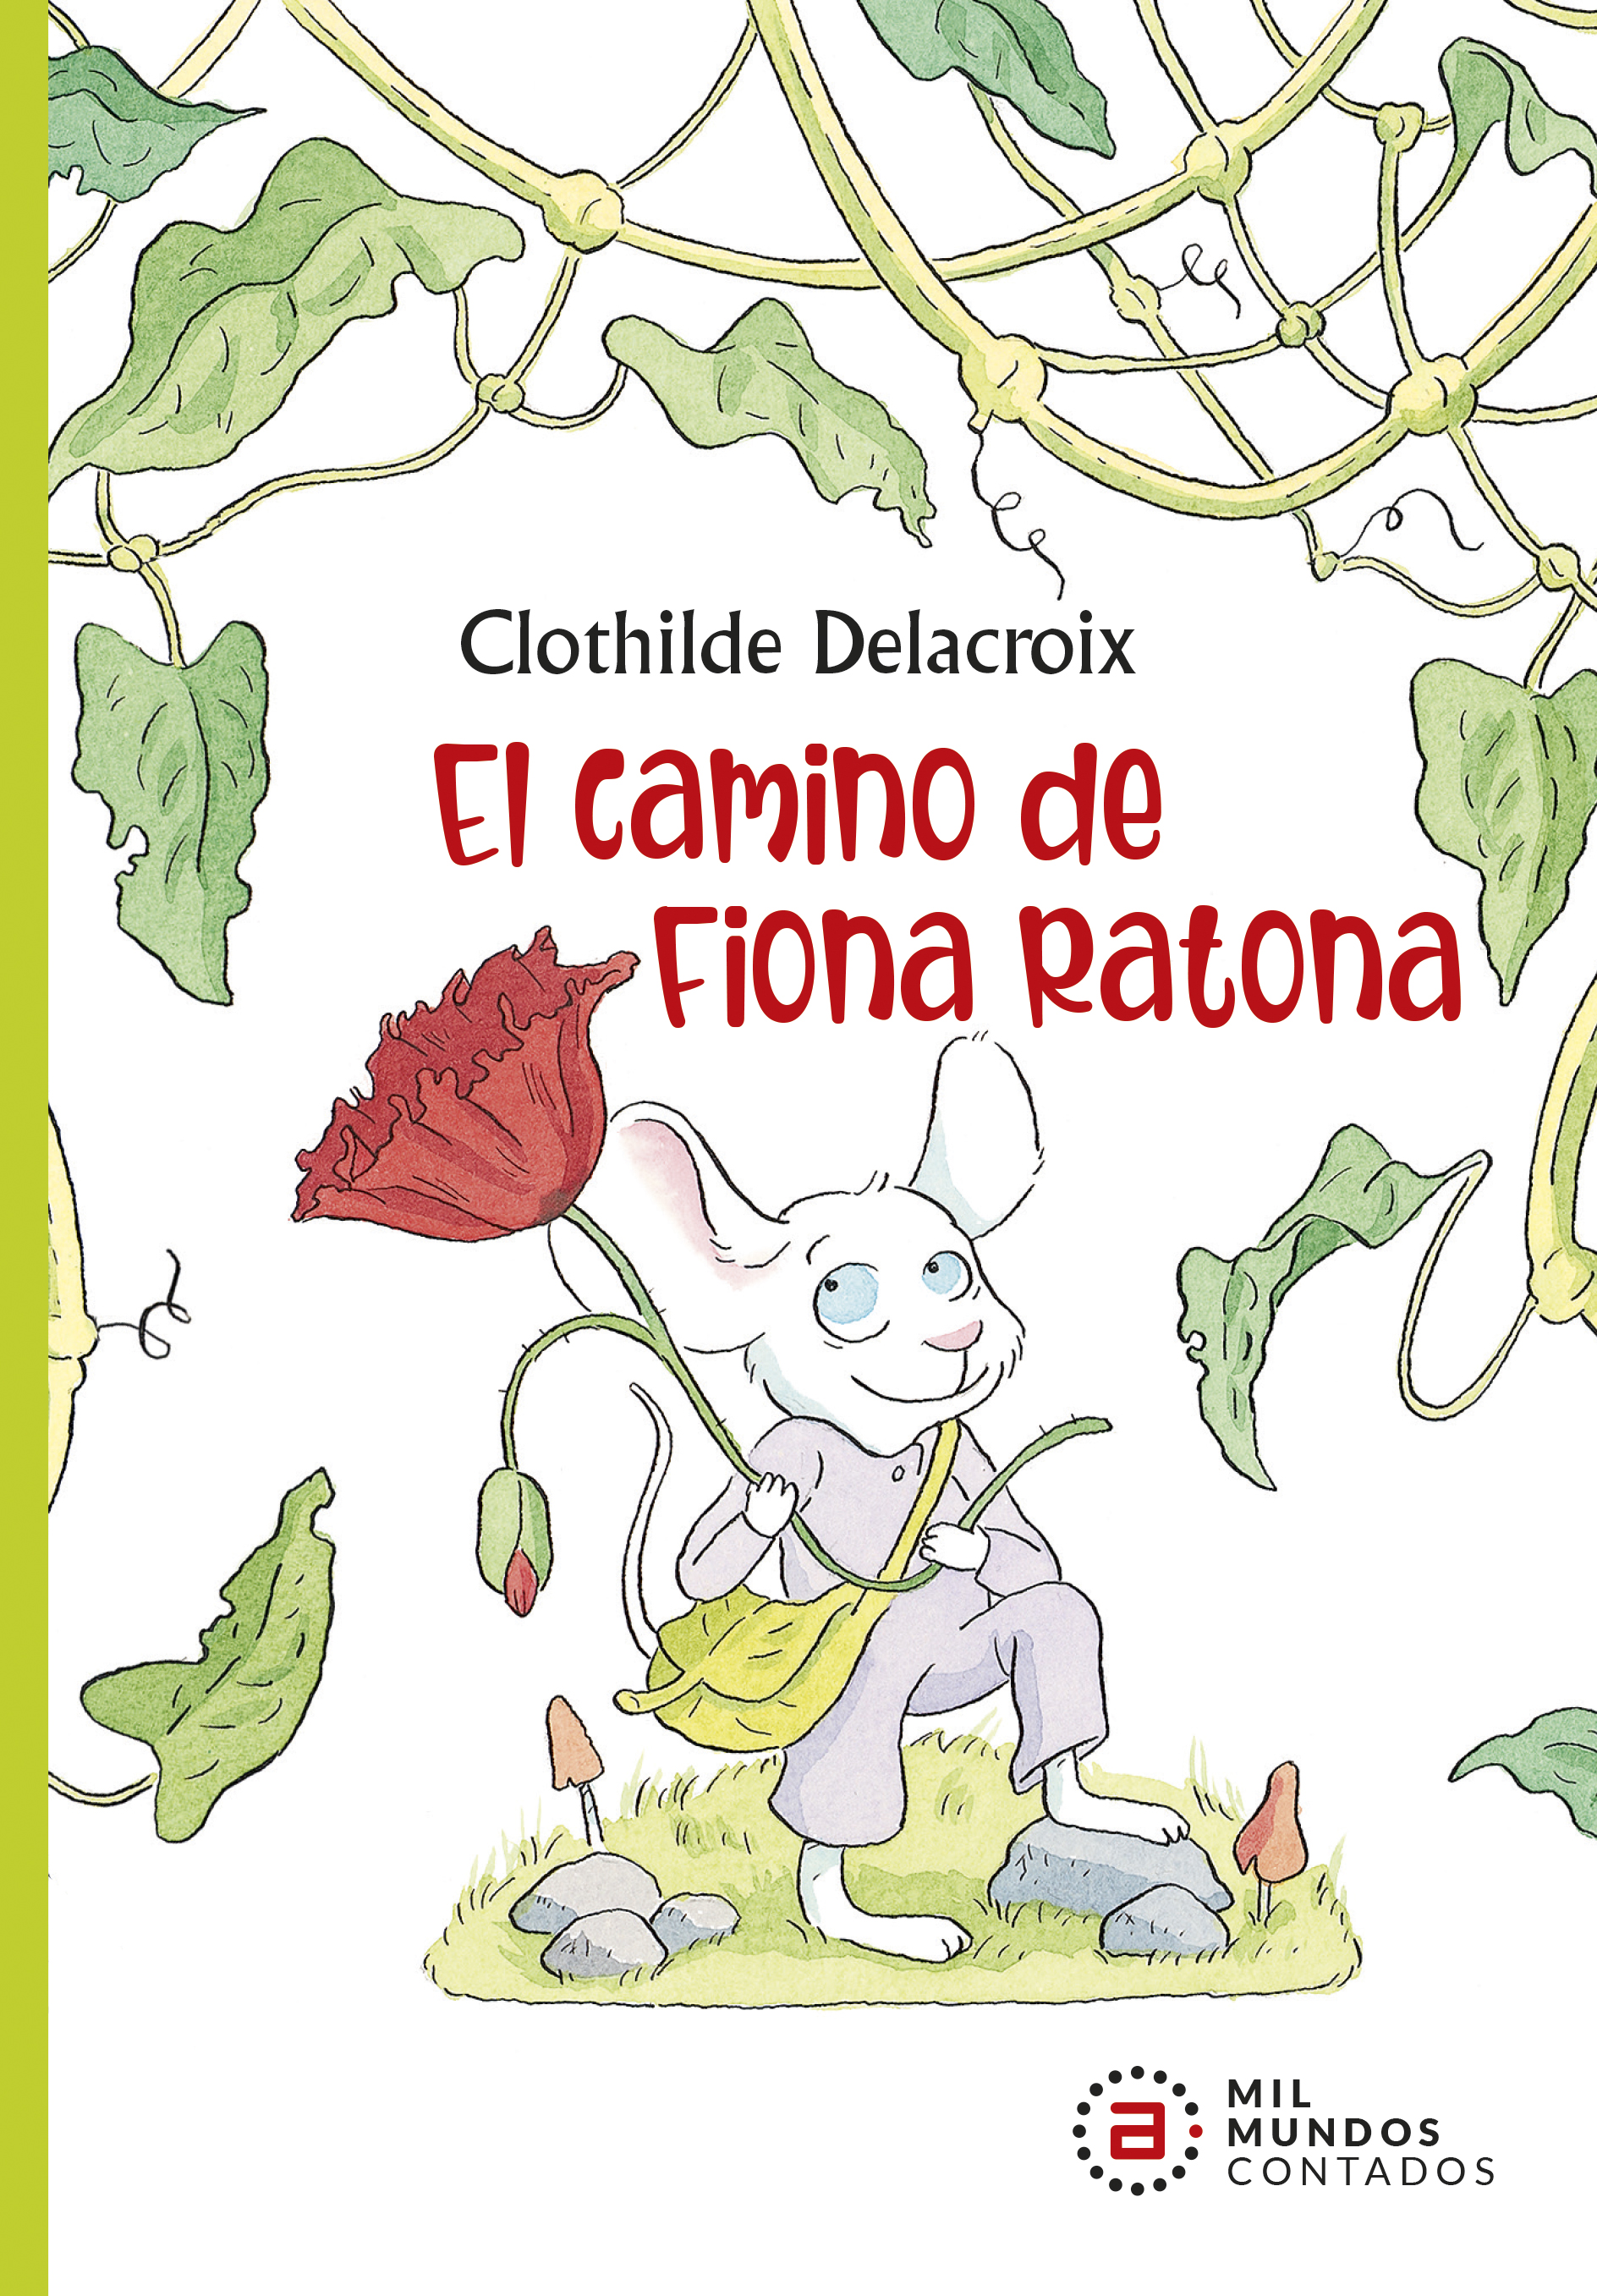 EL CAMINO DE FIONA RATONA - Clothilde Delacroix